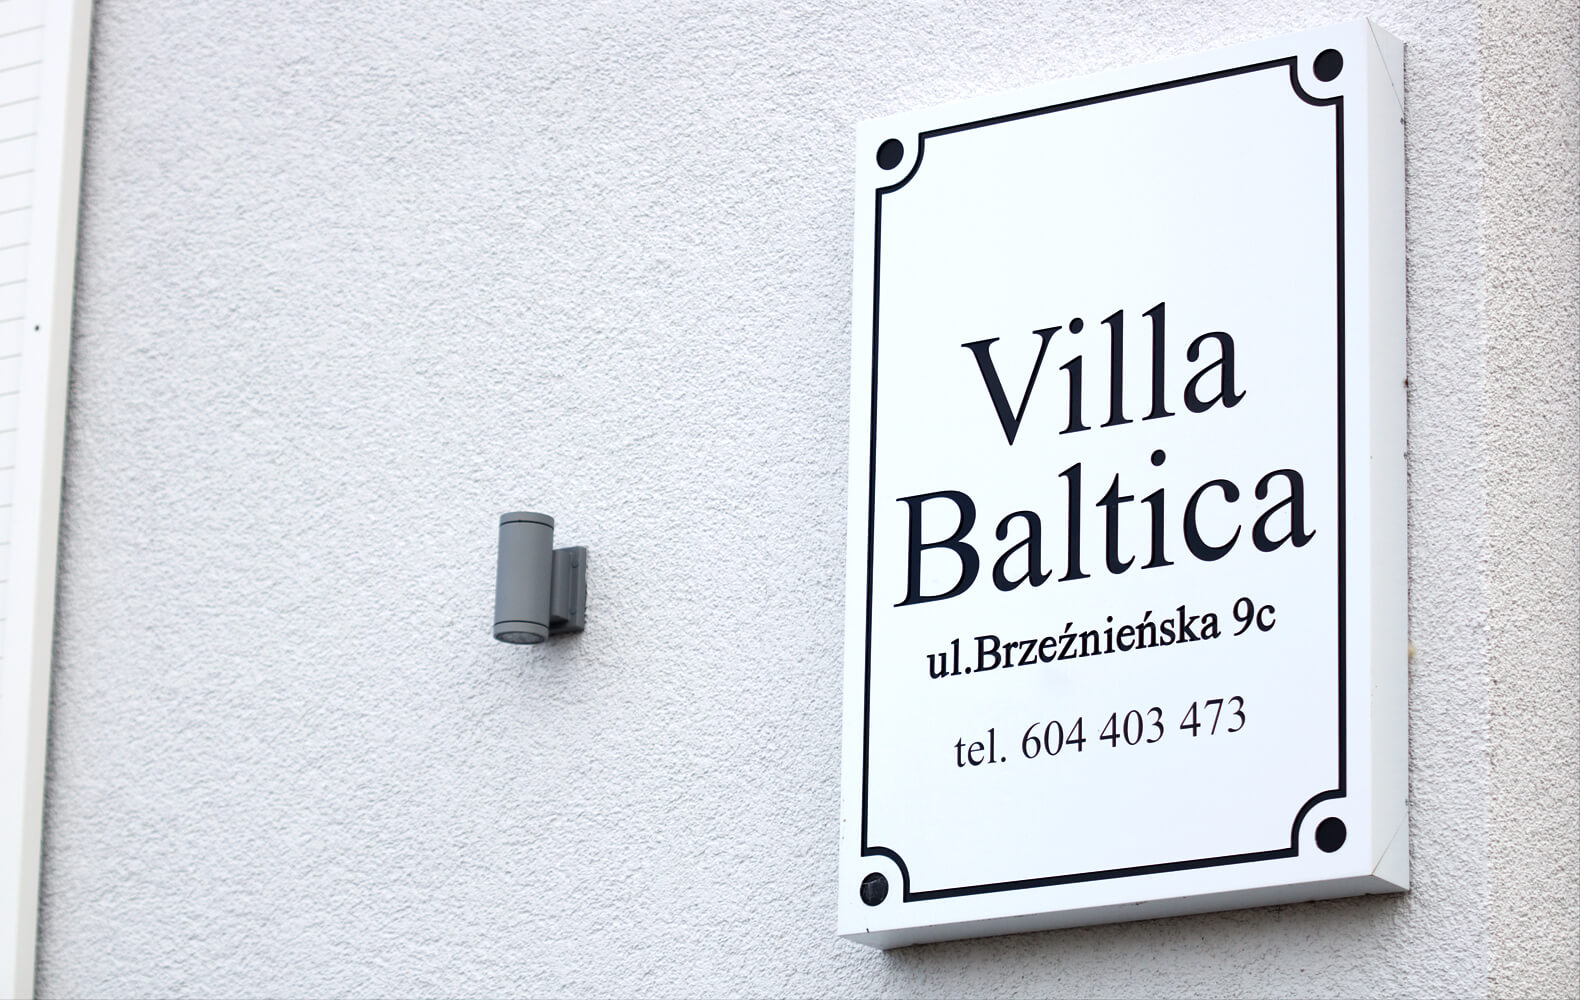 Villa Baltica - Villa Baltica - company signboard on a dibond coffer in white matt color